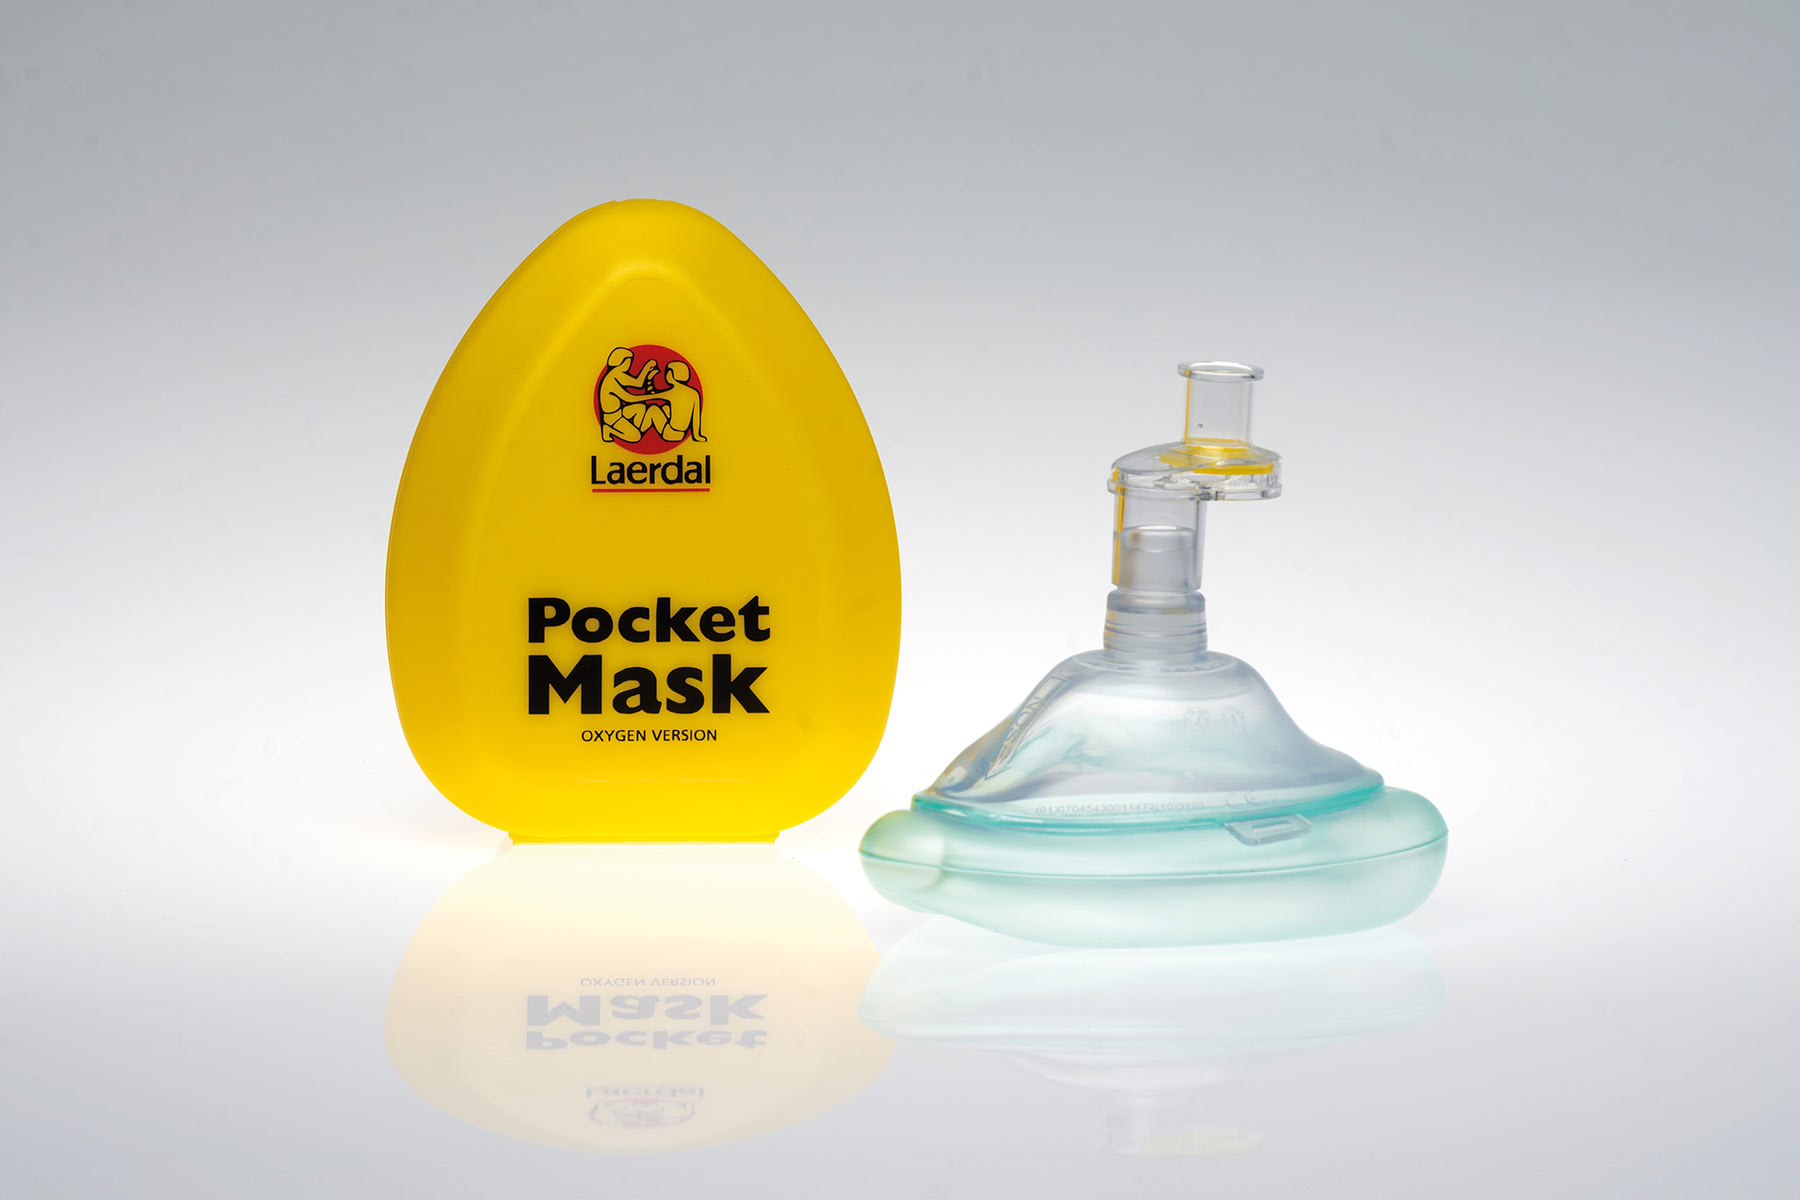 CPR Resuscitator Mask - Adult, Child & Infant (Hard Case)